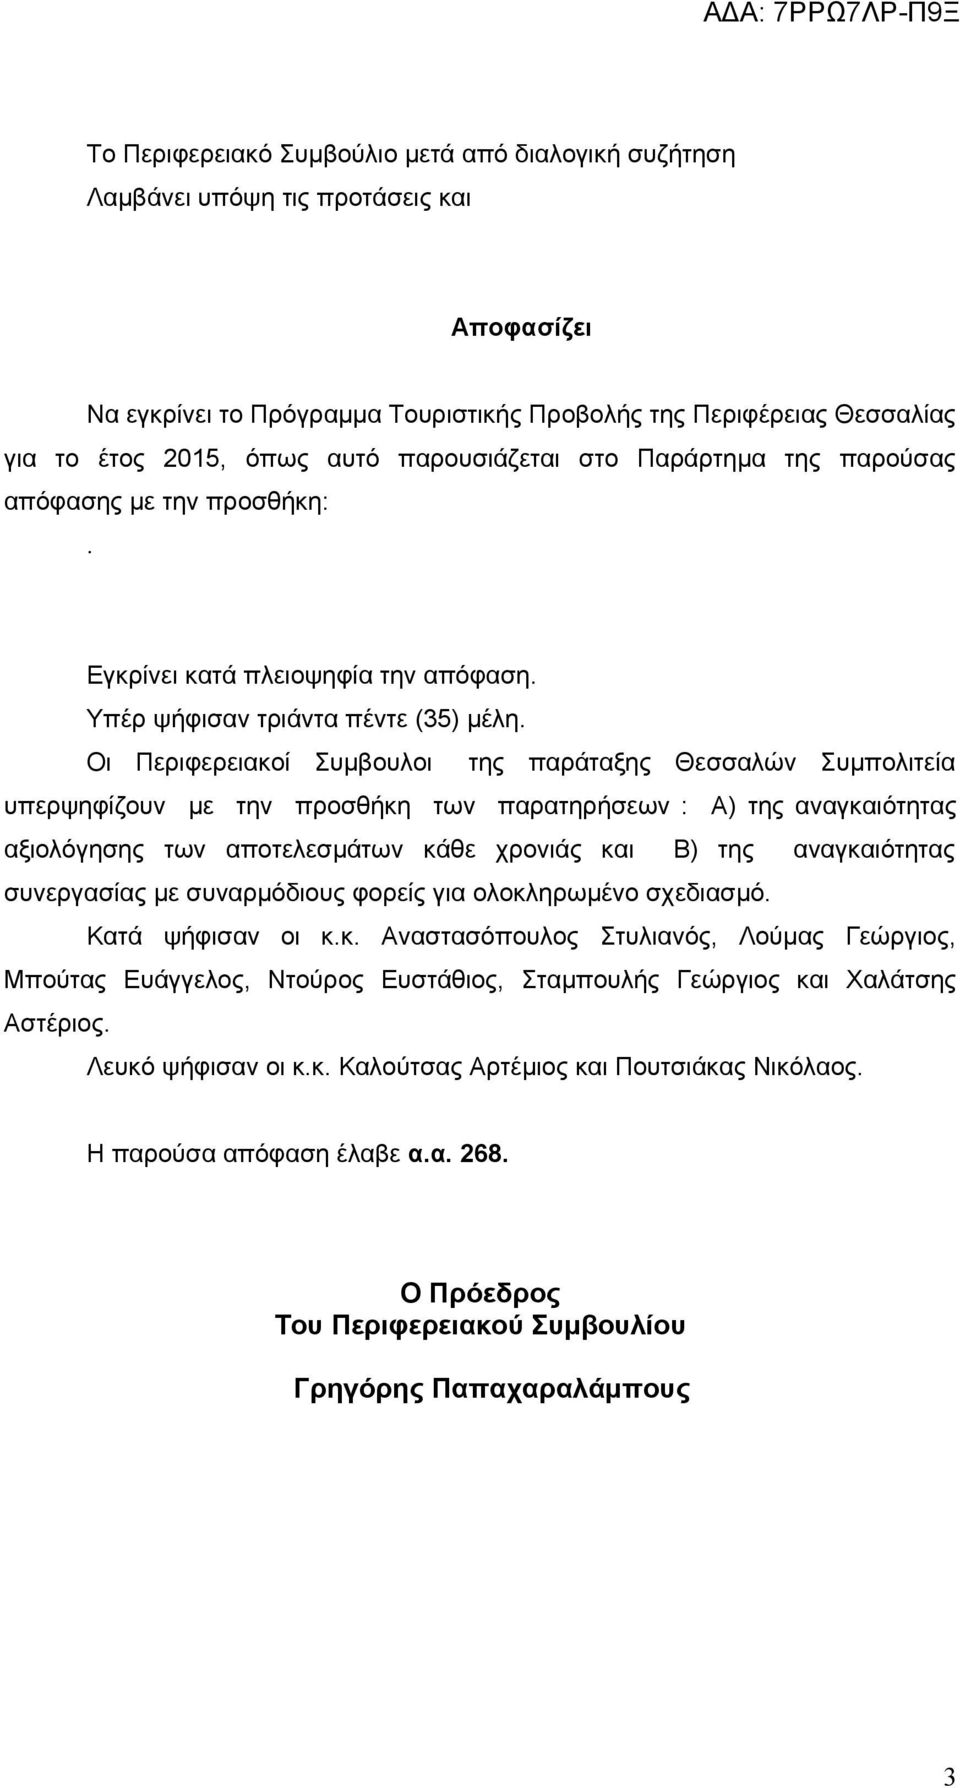 Οι Περιφερειακοί Συμβουλοι της παράταξης Θεσσαλών Συμπολιτεία υπερψηφίζουν με την προσθήκη των παρατηρήσεων : Α) της αναγκαιότητας αξιολόγησης των αποτελεσμάτων κάθε χρονιάς και Β) της αναγκαιότητας